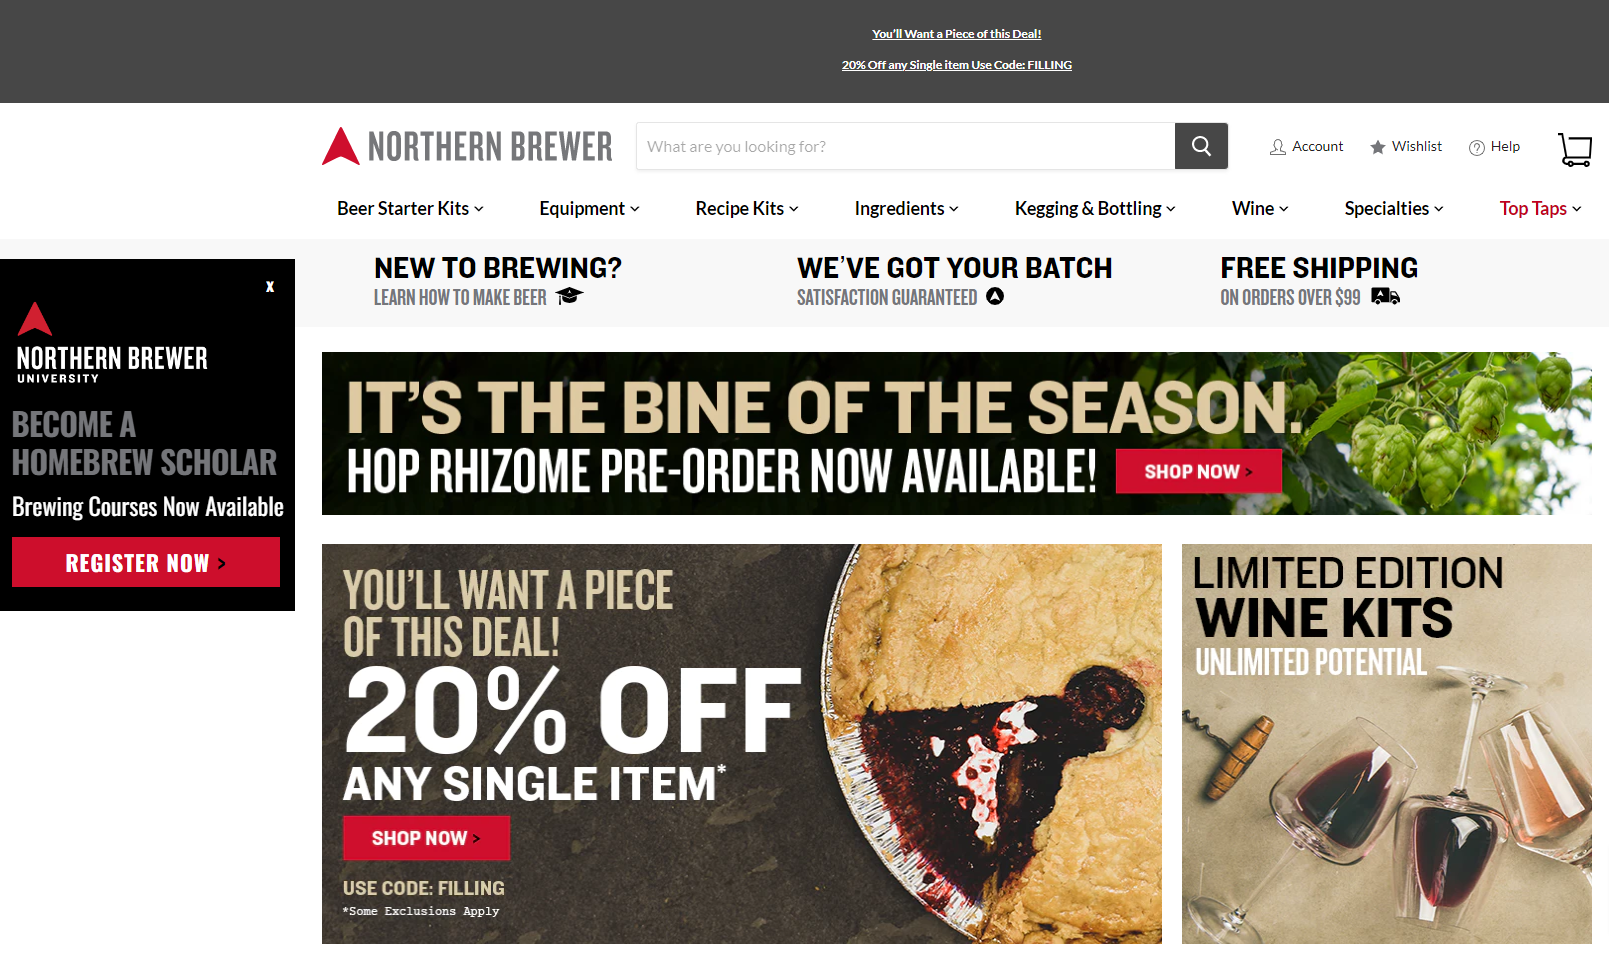 Nothern Brewer Home Page Inbound Marketing